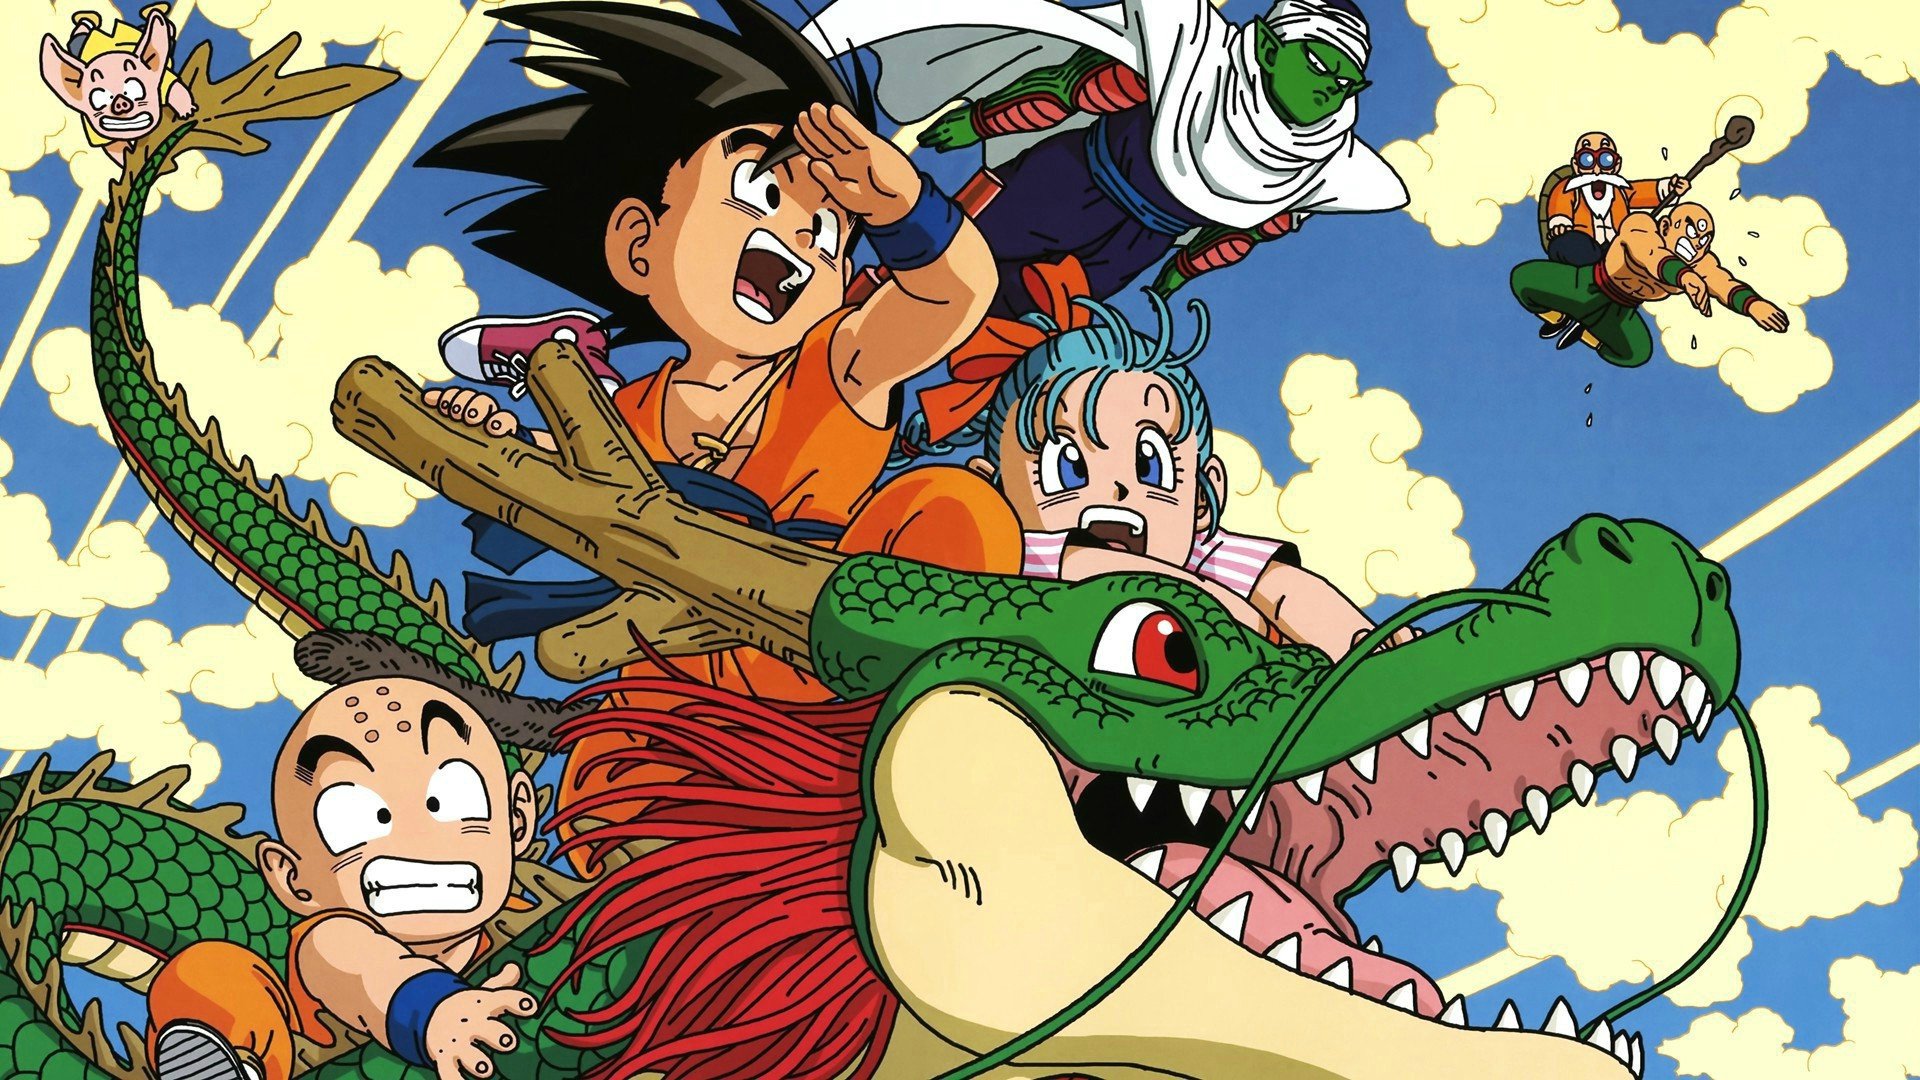 Goku là anh hùng được yêu thích nhất trong series Dragon Ball Z, và chúng tôi đã sưu tập những hình nền độc đáo để bạn cùng chiêm ngưỡng. Với mỗi thiết kế, bạn sẽ được thấy Goku trong những khung cảnh hấp dẫn như chiến đấu với đế chế Frieza, hợp nhất với Vegeta và nhiều hình ảnh khác đầy màu sắc và sức sống.